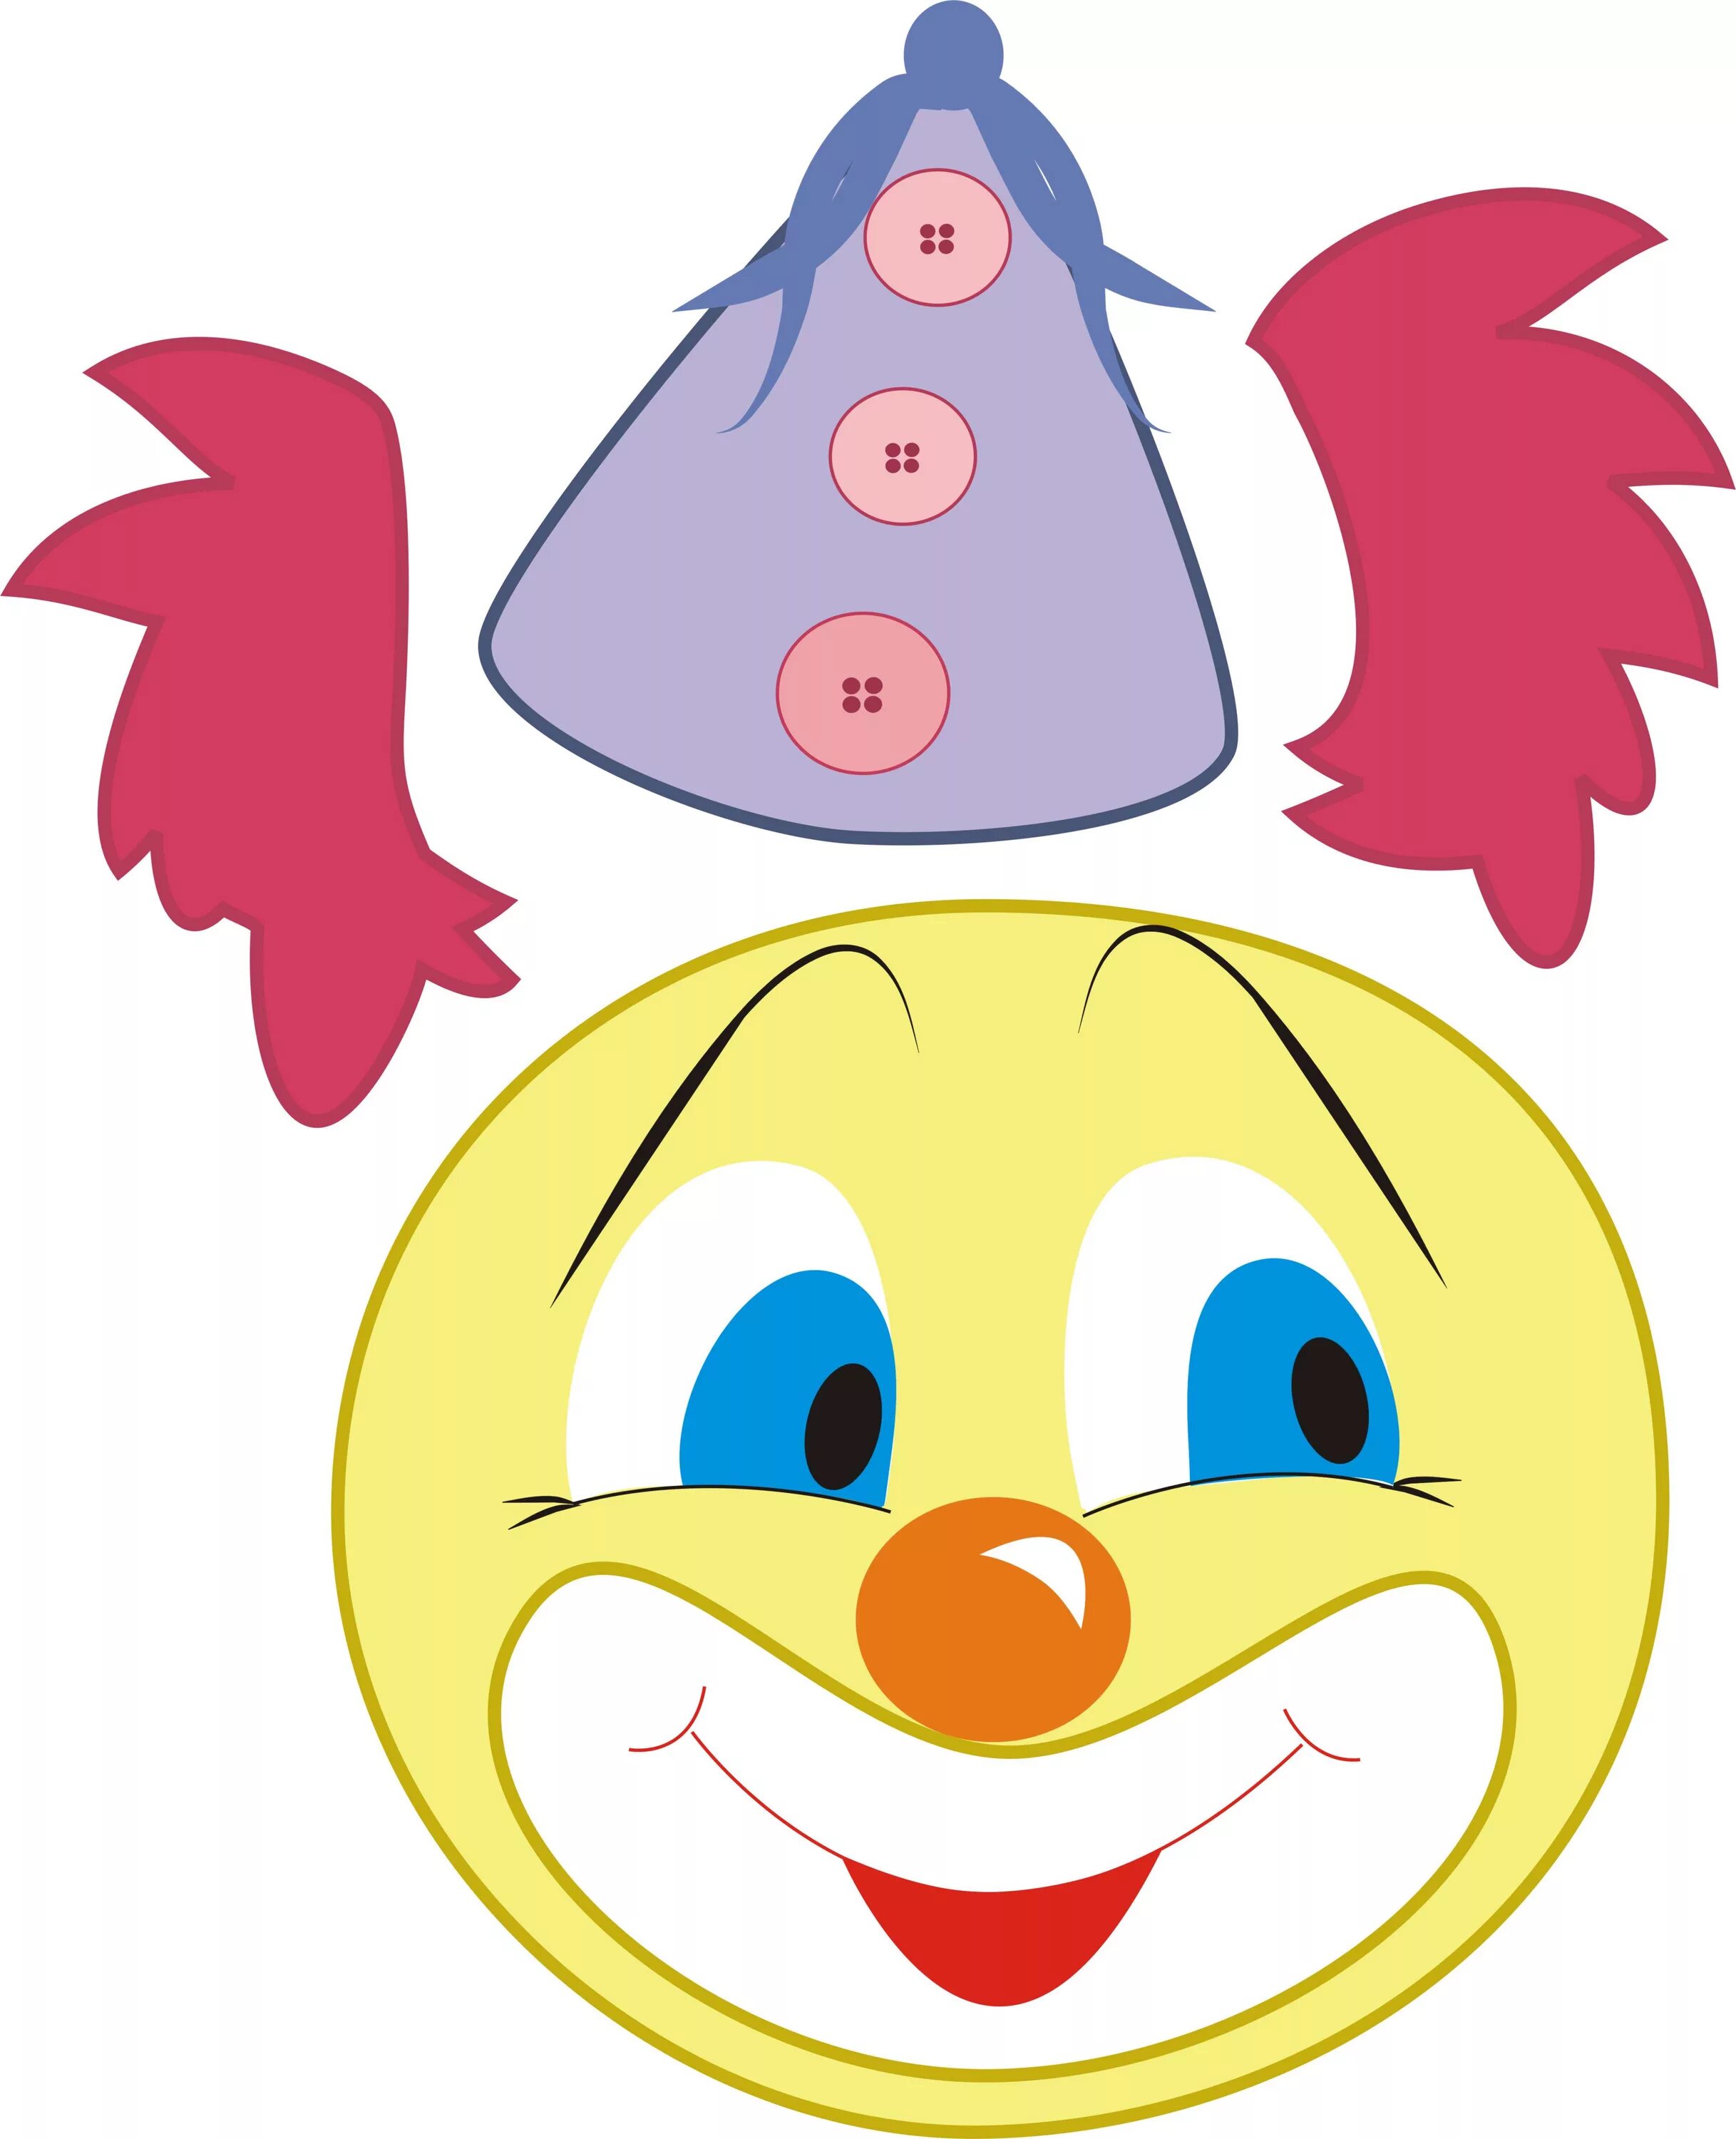 Шаблон клоуна для аппликации для детей. Аппликация "клоун". Аппликации для малышей. Поделка клоун из цветной бумаги. Аппликация клоун для малышей.